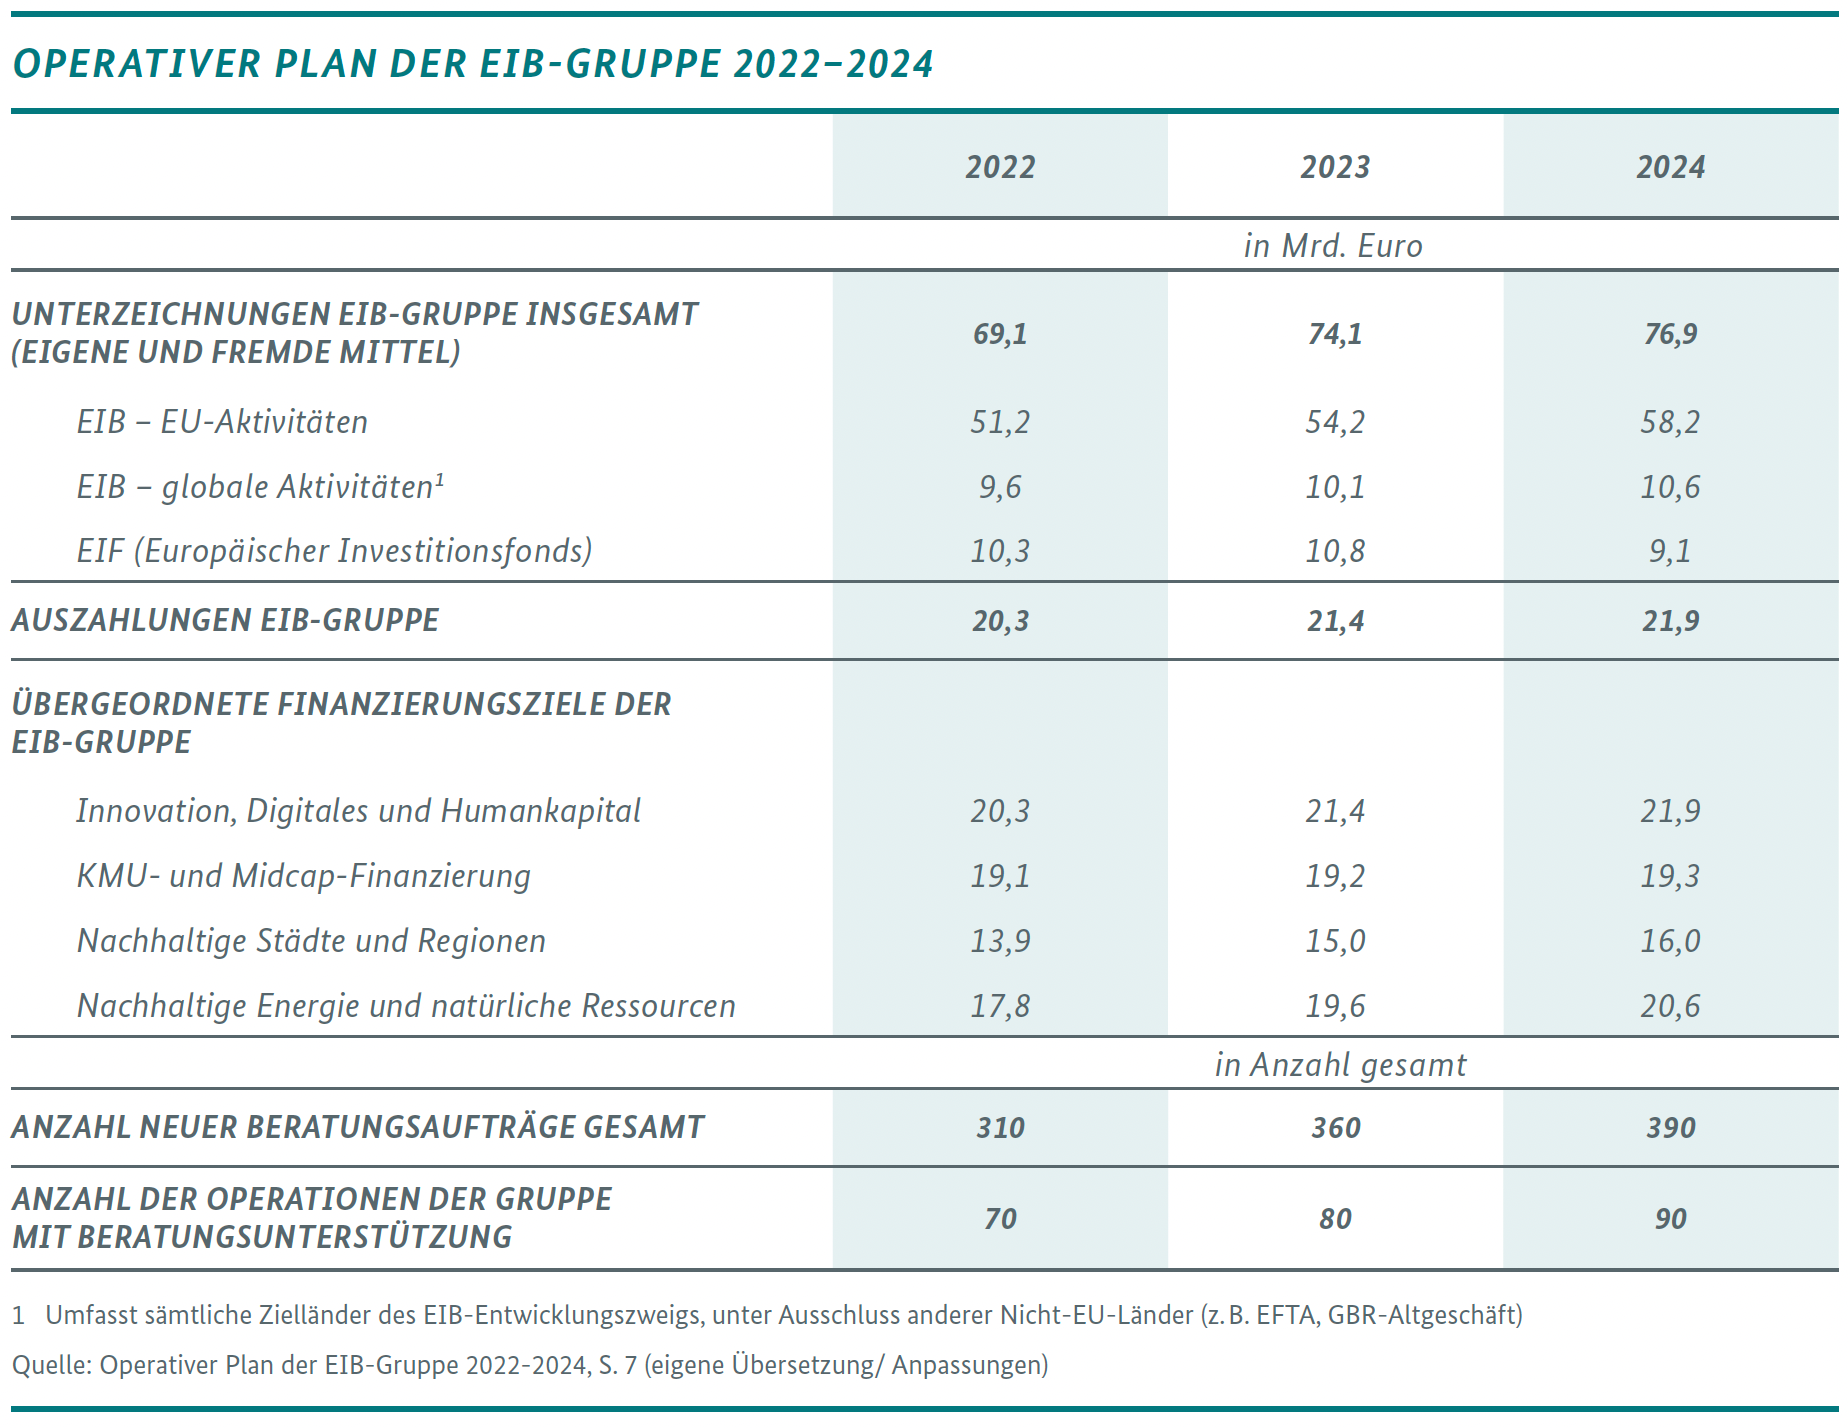 Grafik: Operativer Plan der EIB-Gruppe 2022-2024